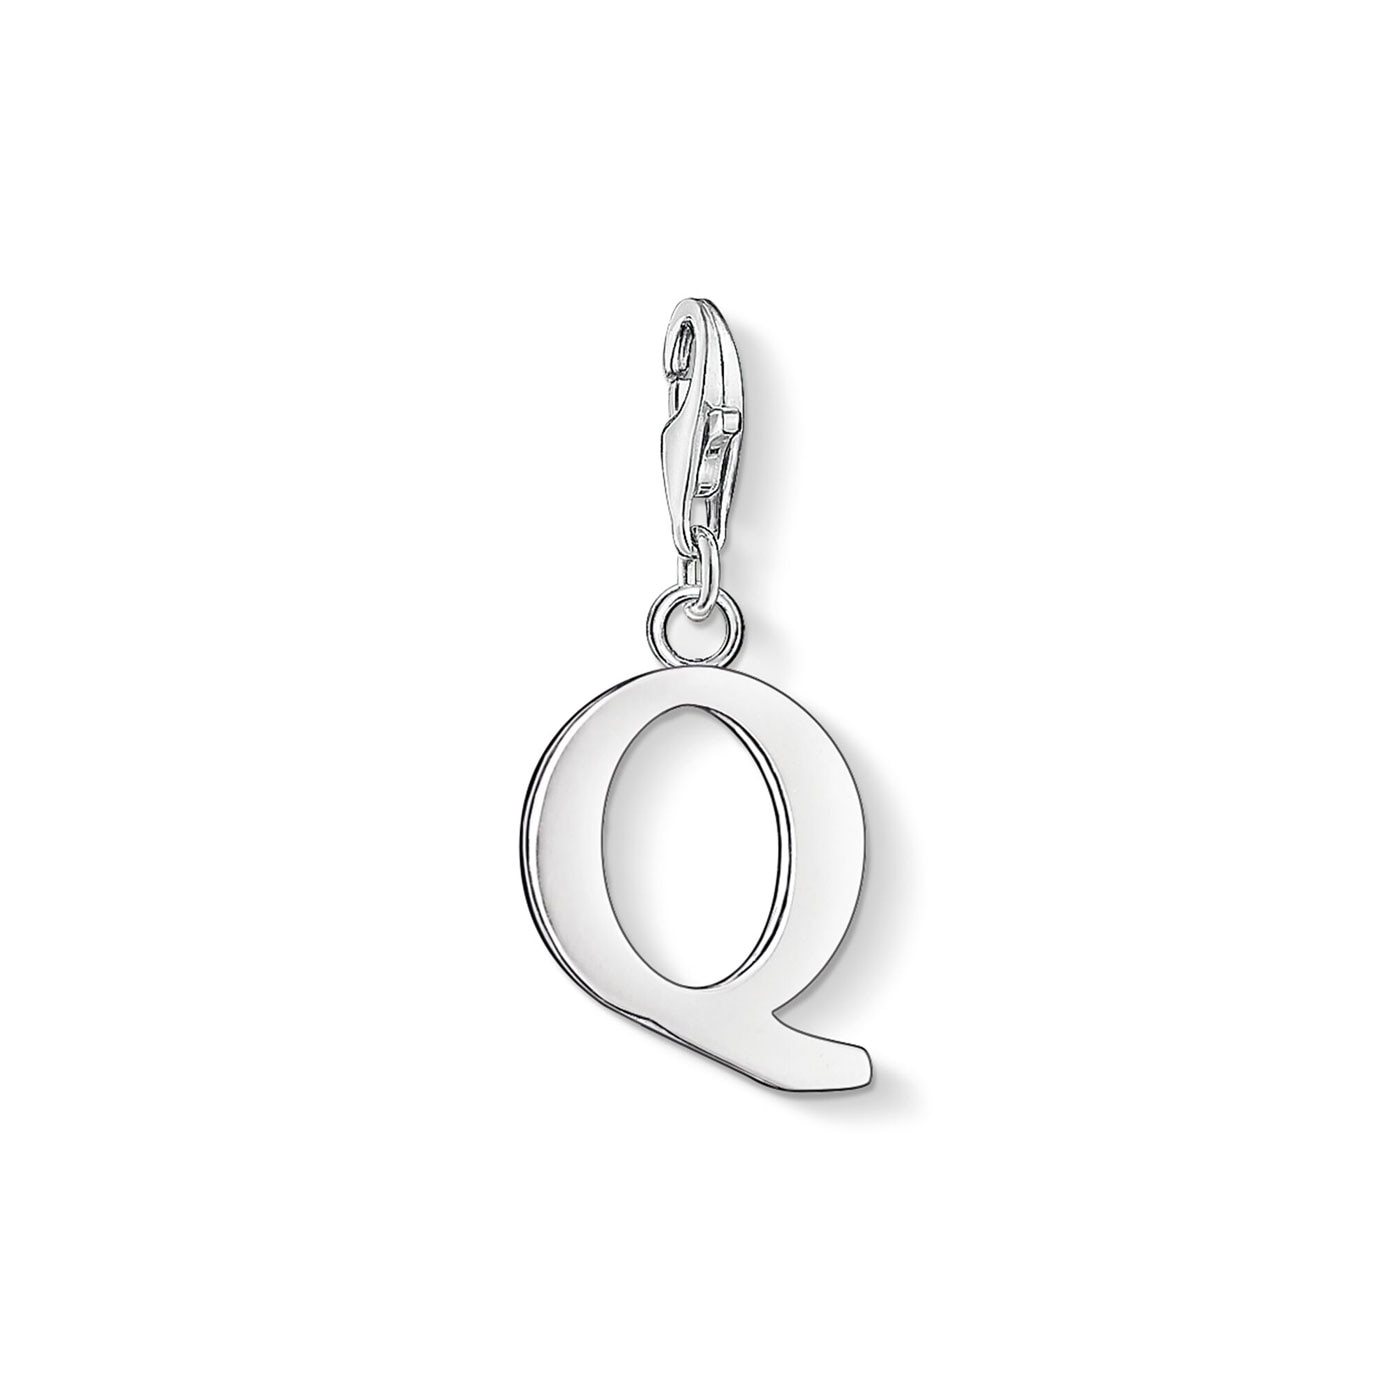 Charm pendant letter Q